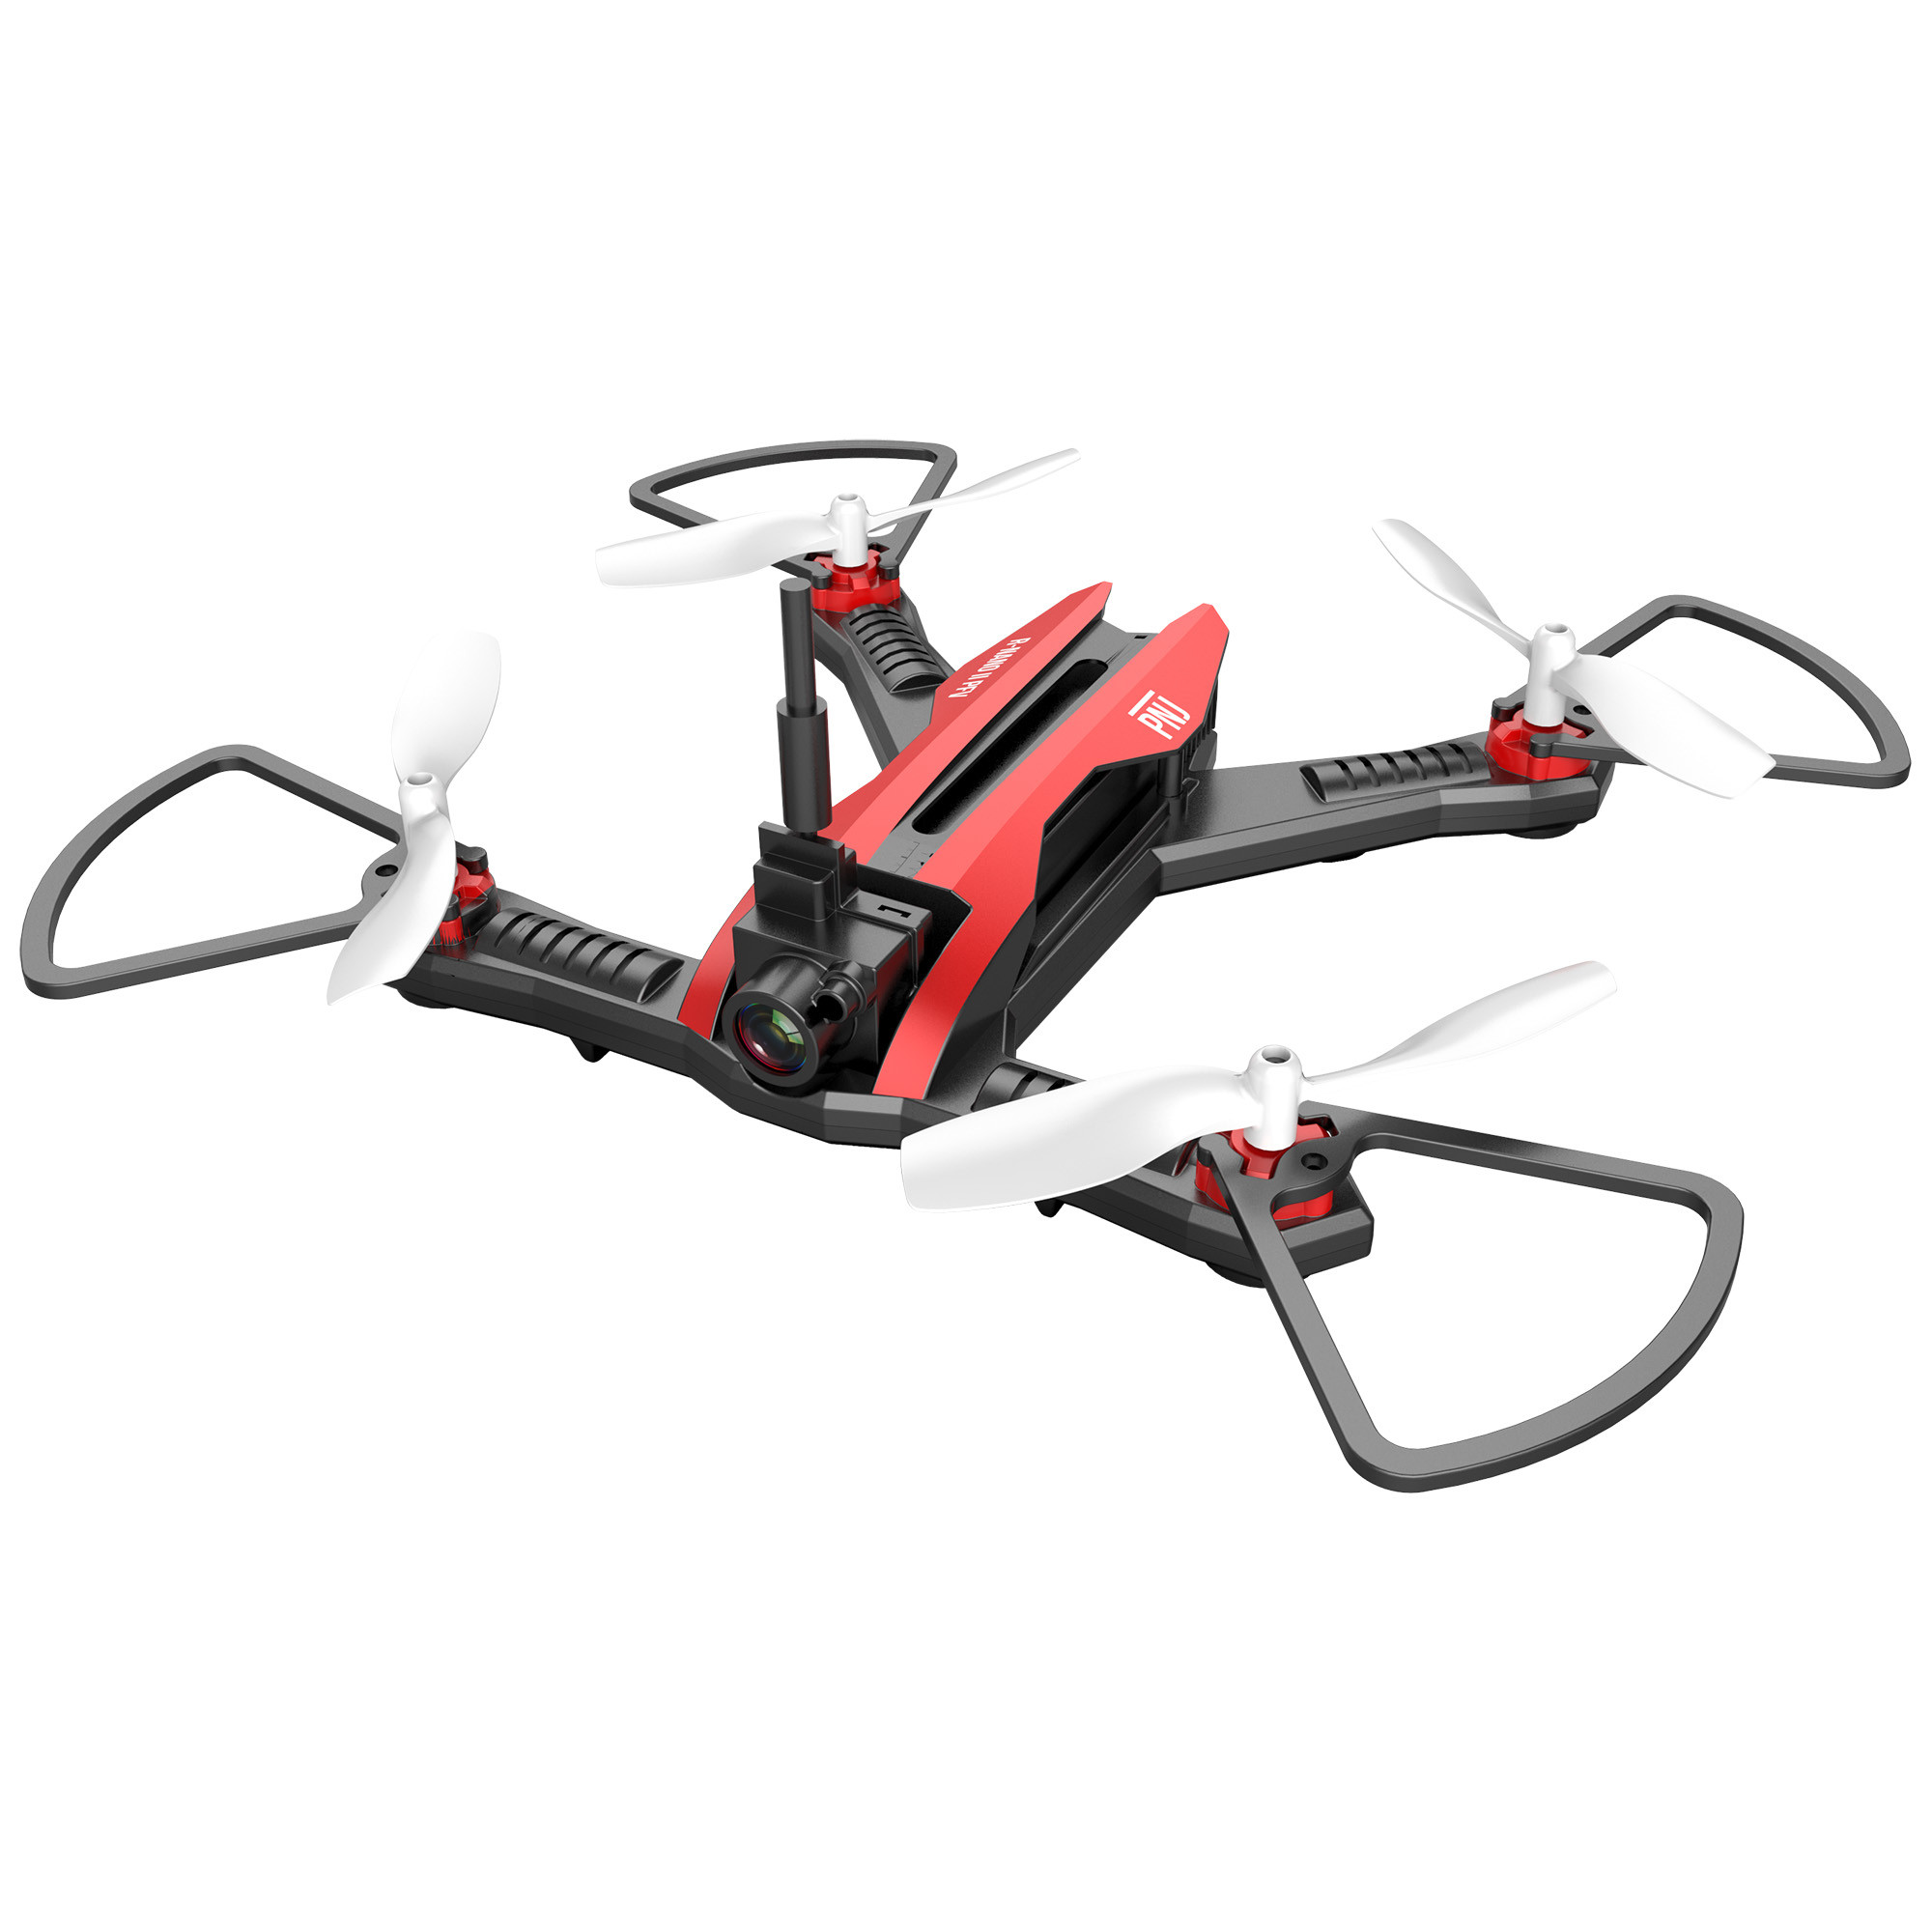 https://www.ravate.com/119896/drone-r-nano-ii-mini-racer-fdv-rouge-pnj-dro-r-nano-ii-fpv.jpg